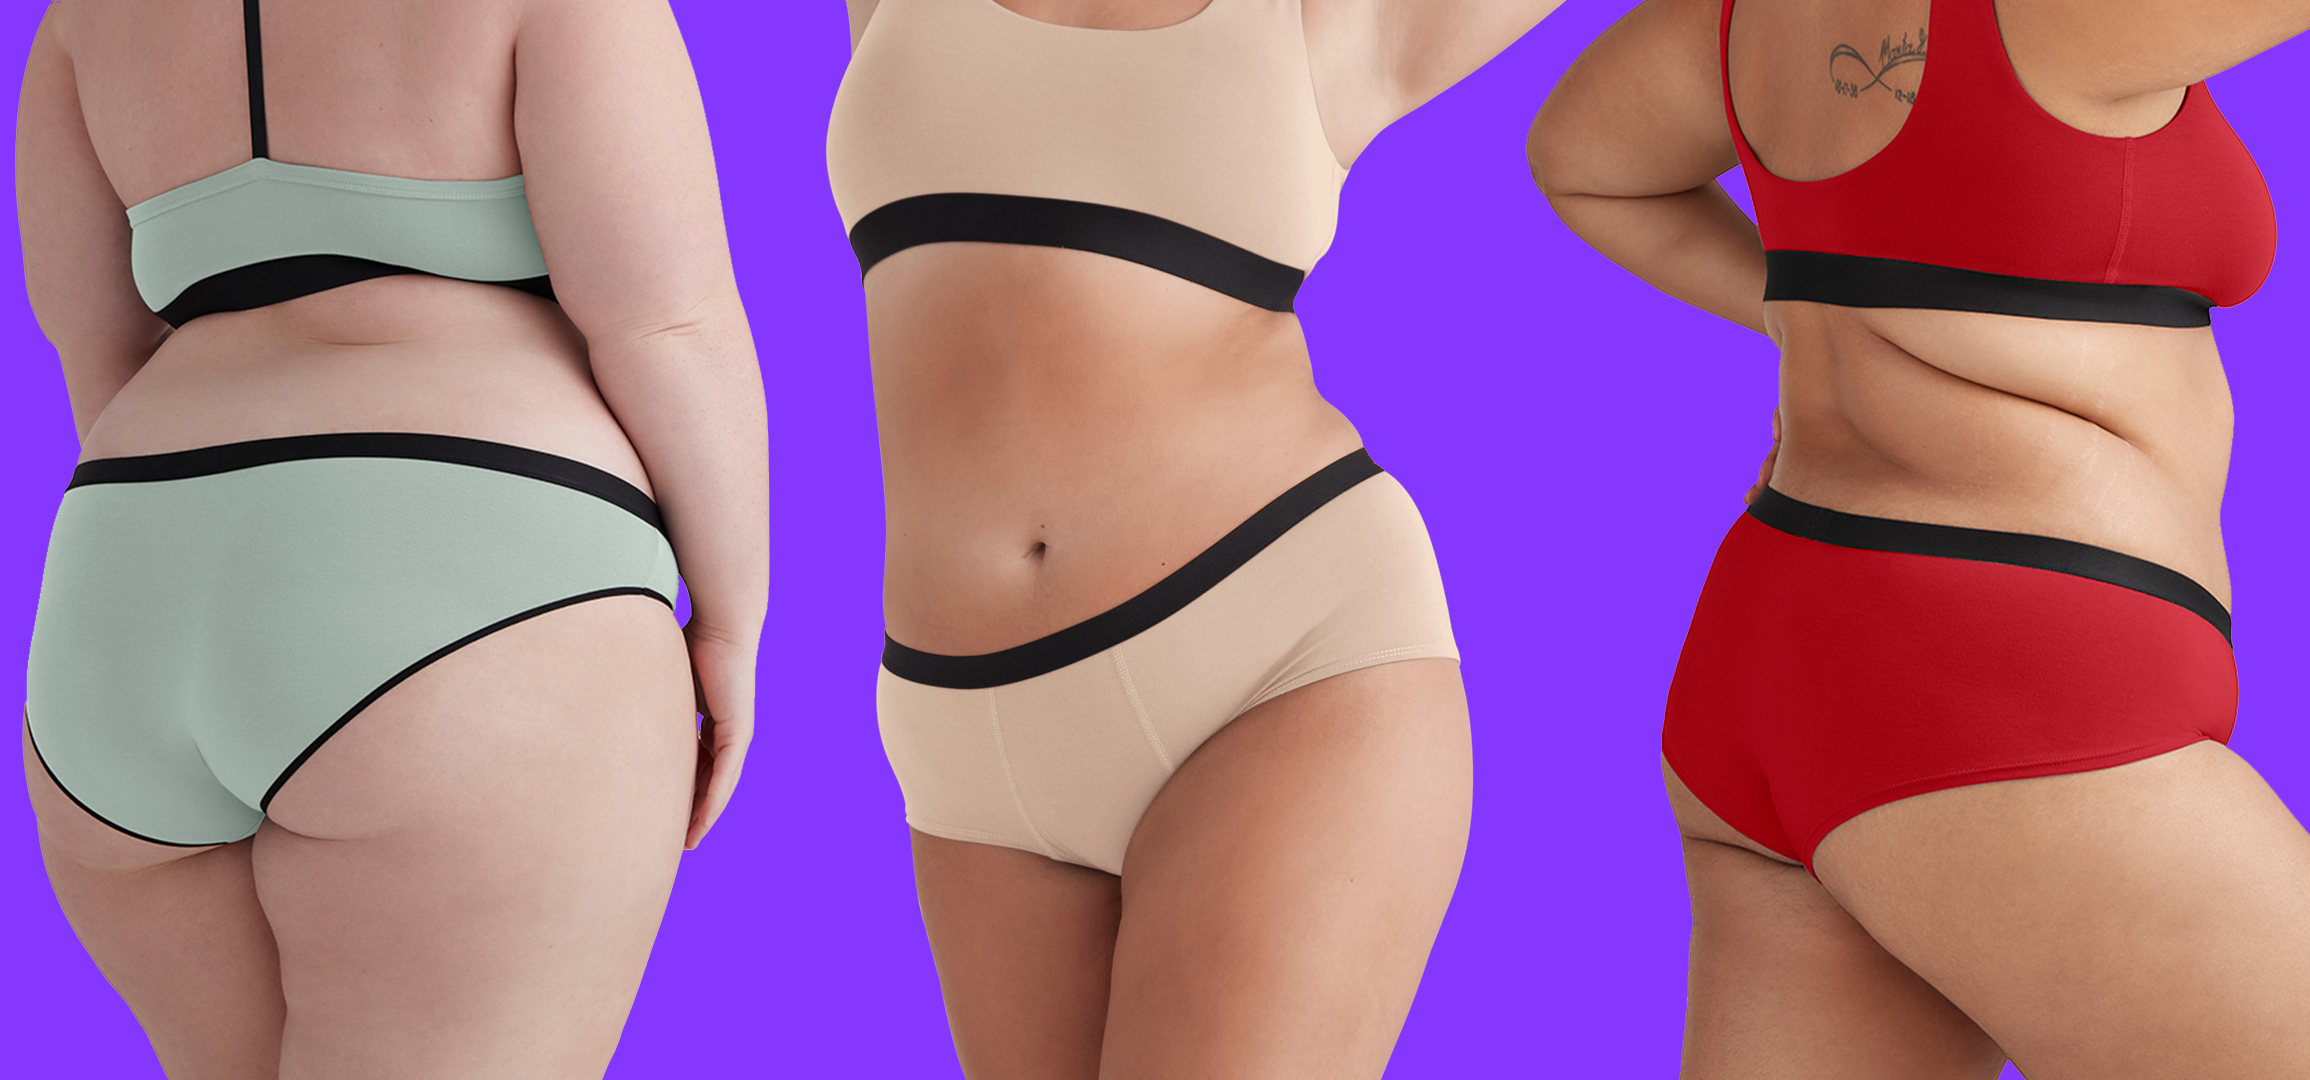 Best Types of Underwear for Women — Beyond Basics by MeUndies